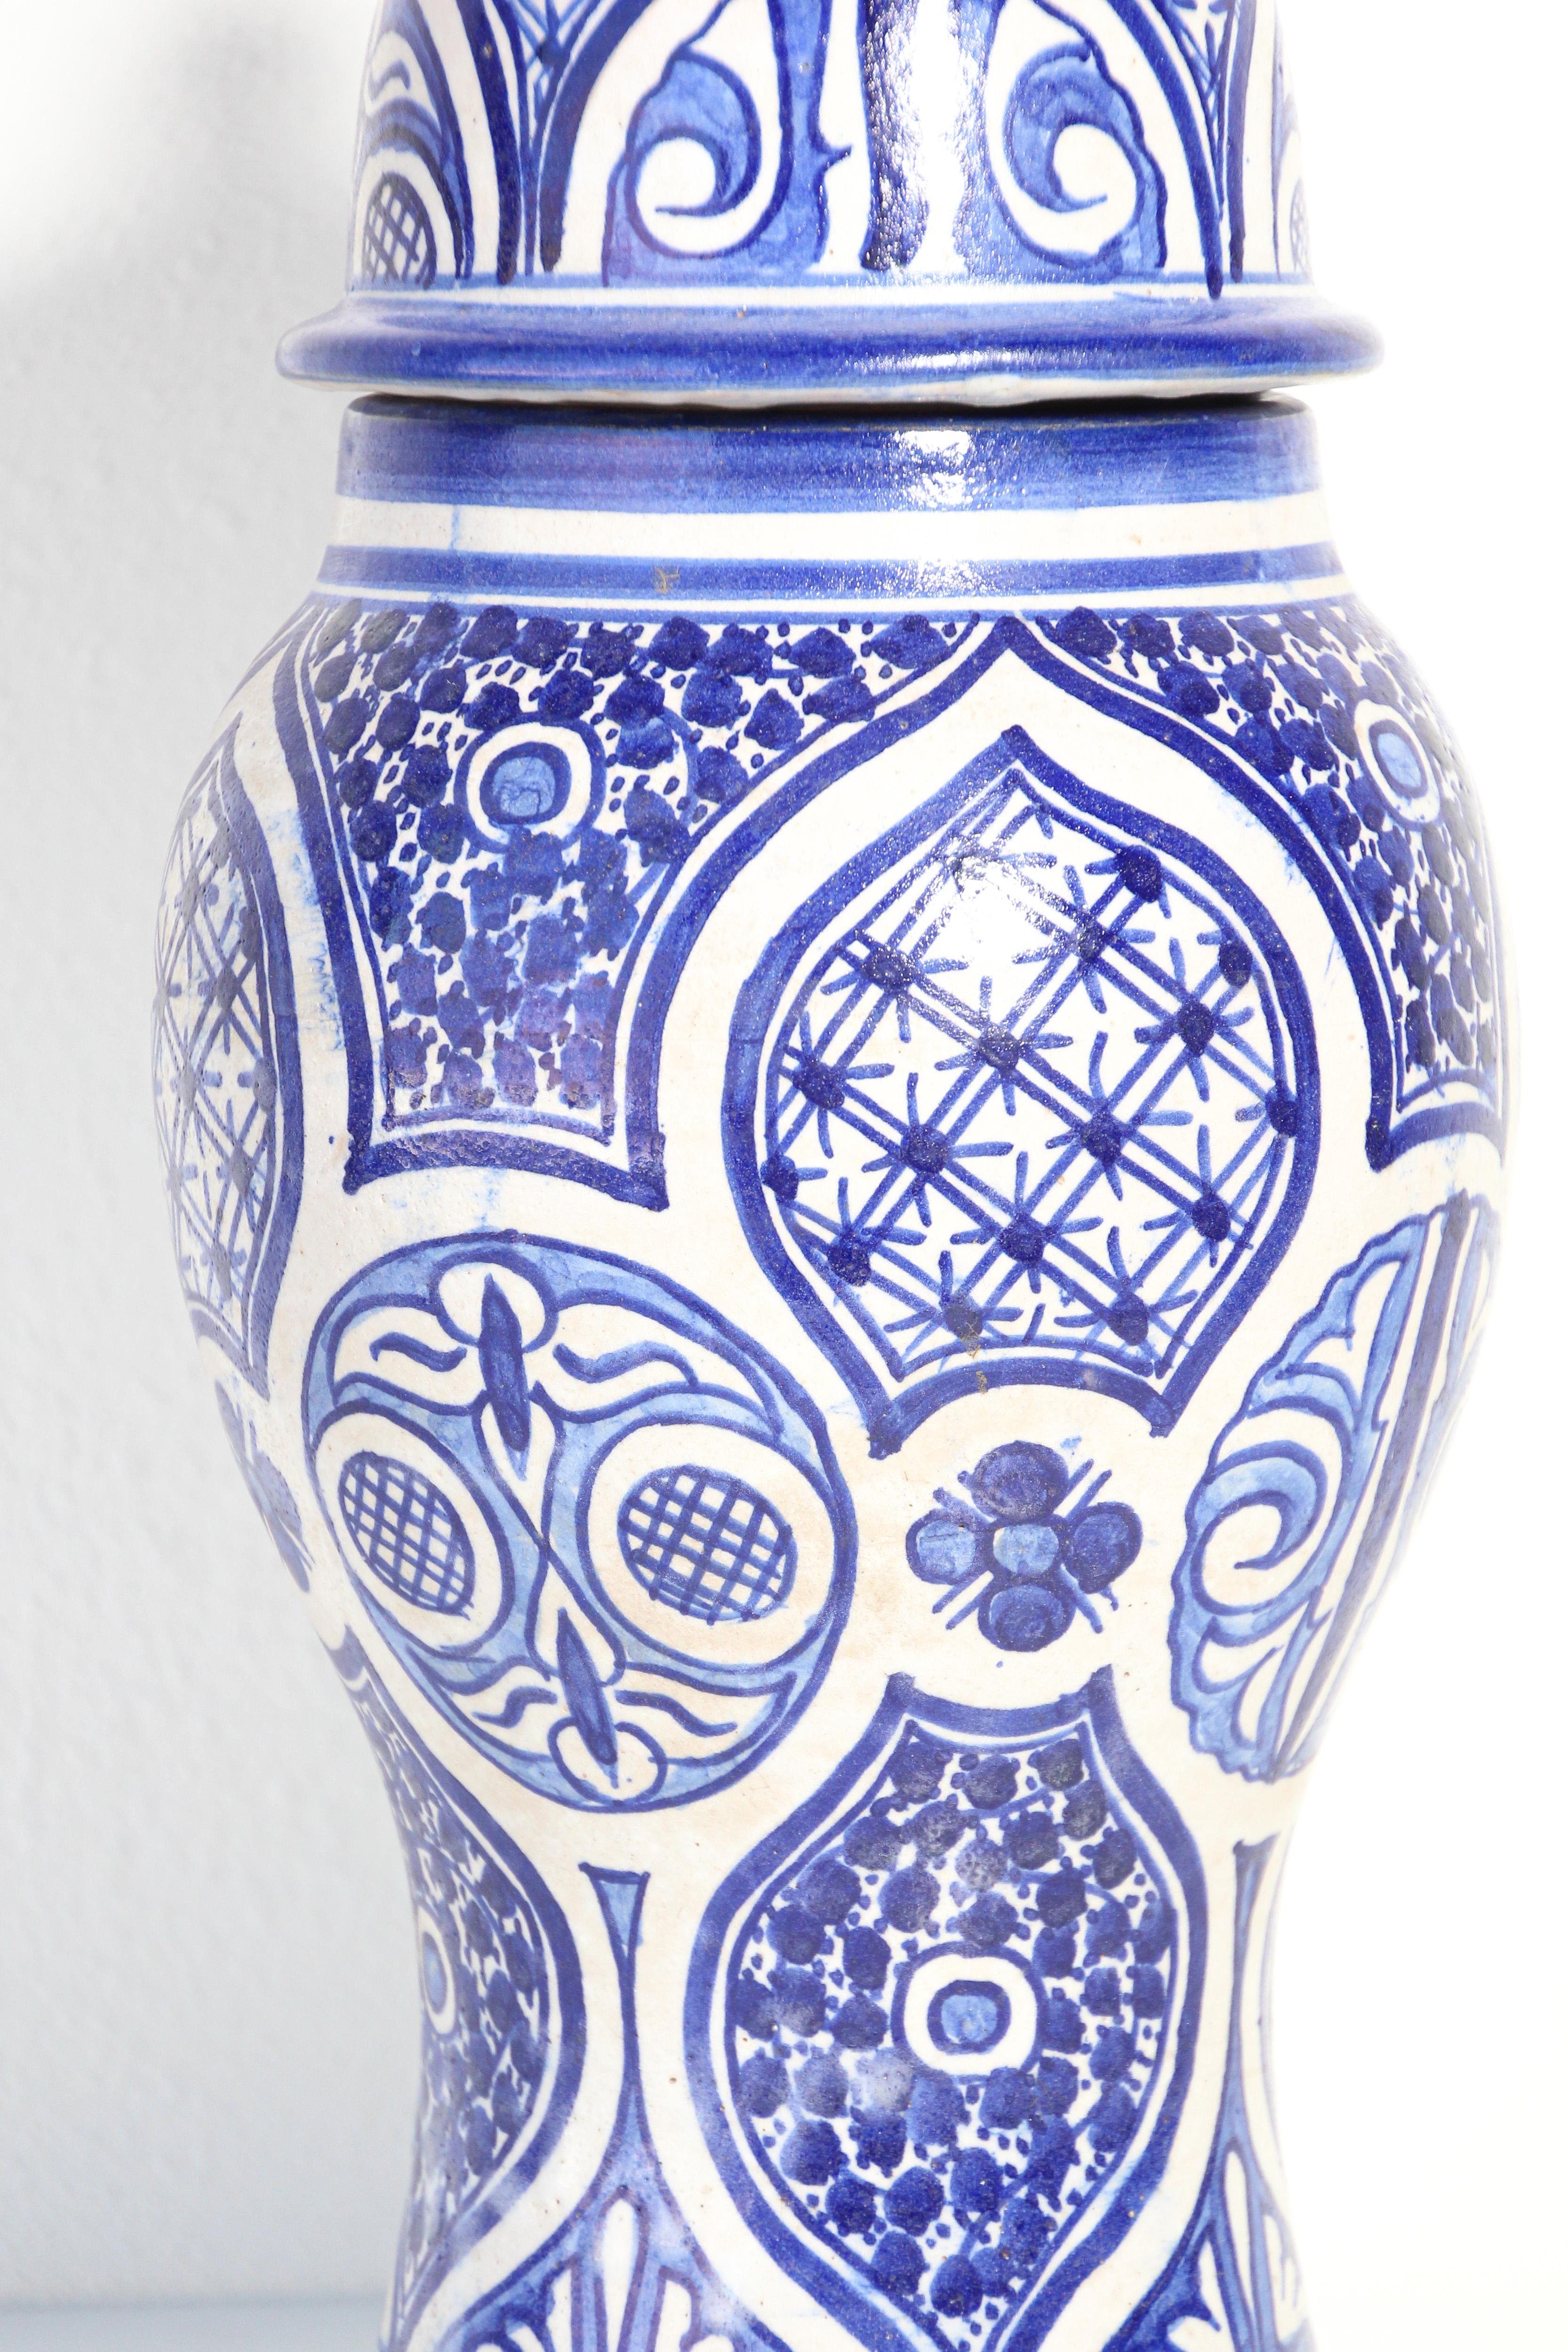 Jarre décorative marocaine en céramique émaillée avec couvercle, provenant de Fès.
Urne décorative en céramique de style mauresque, fabriquée et peinte à la main avec un motif floral.
Bleu royal et couleur ivoire Moorish design.
Taille : 16 po de